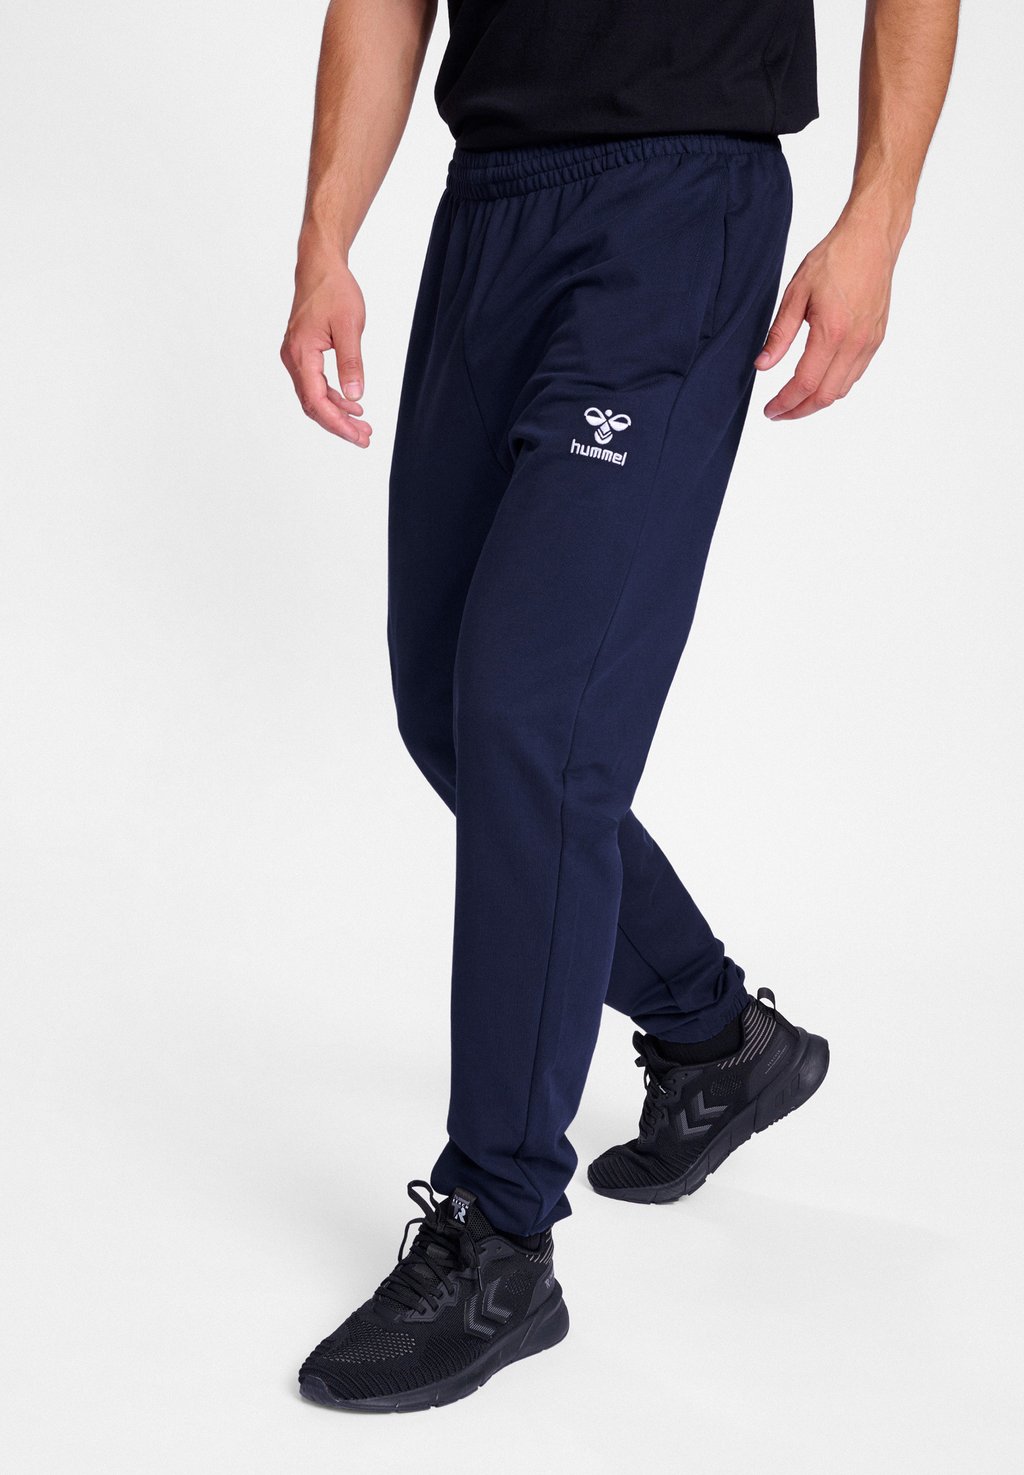 короткие спортивные штаны hummel цвет marine Спортивные штаны Hummel, цвет marine